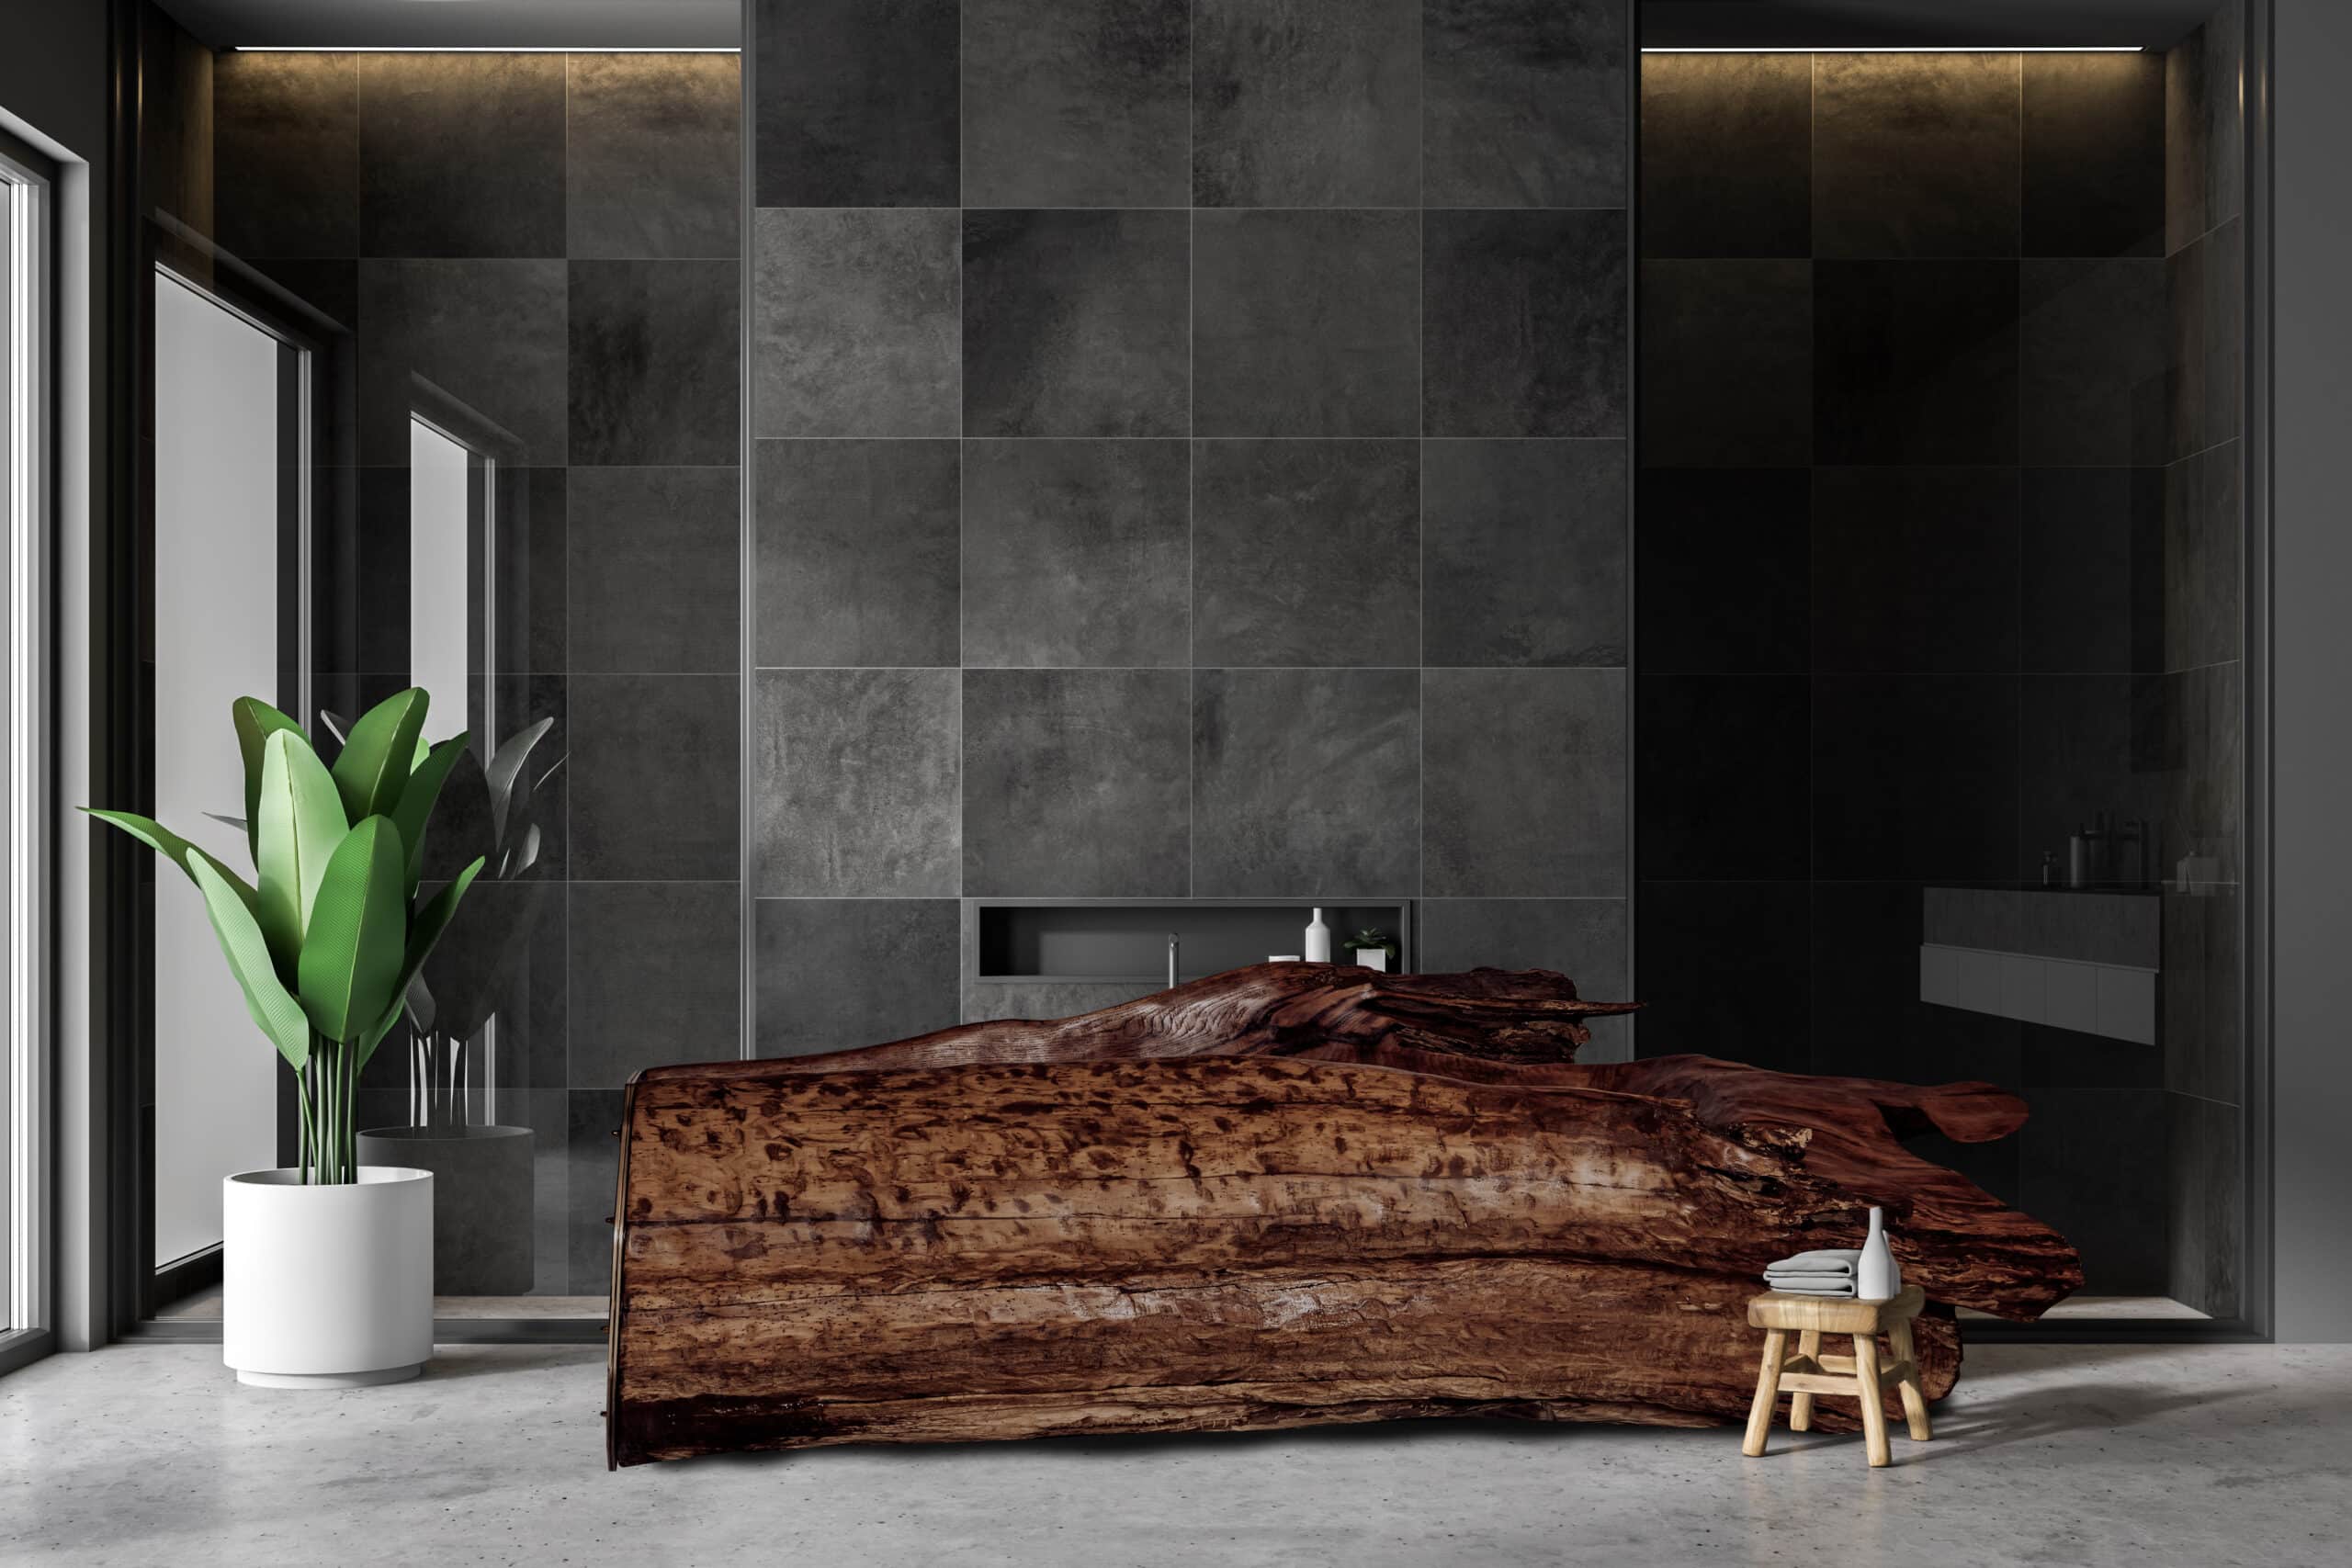 Holzbadewanne mit Glasende in einem modernen Bad